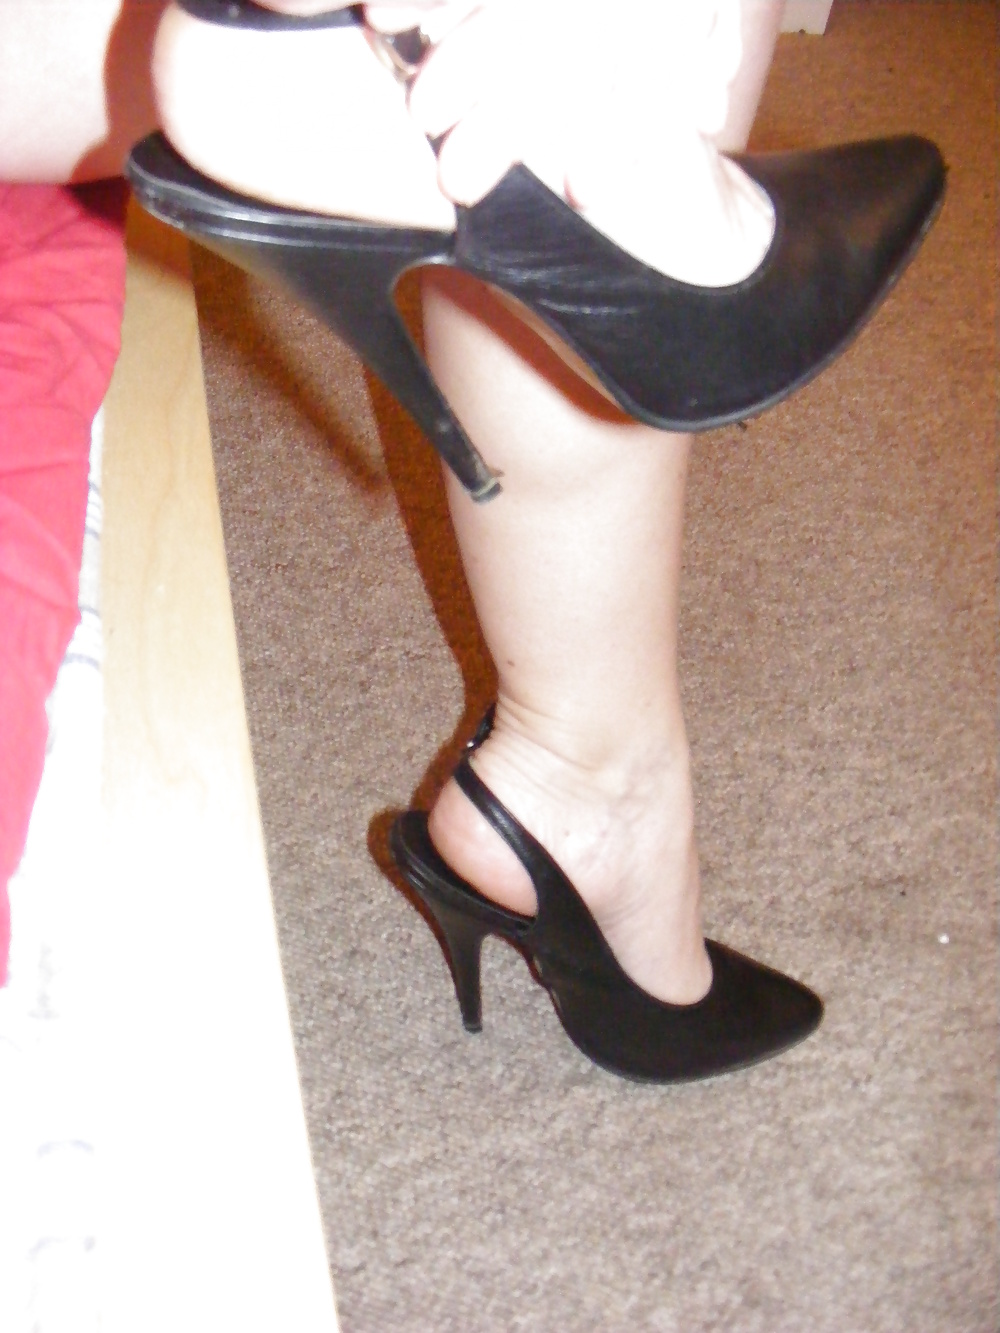 Hot milf wearing heels and panties #27571955